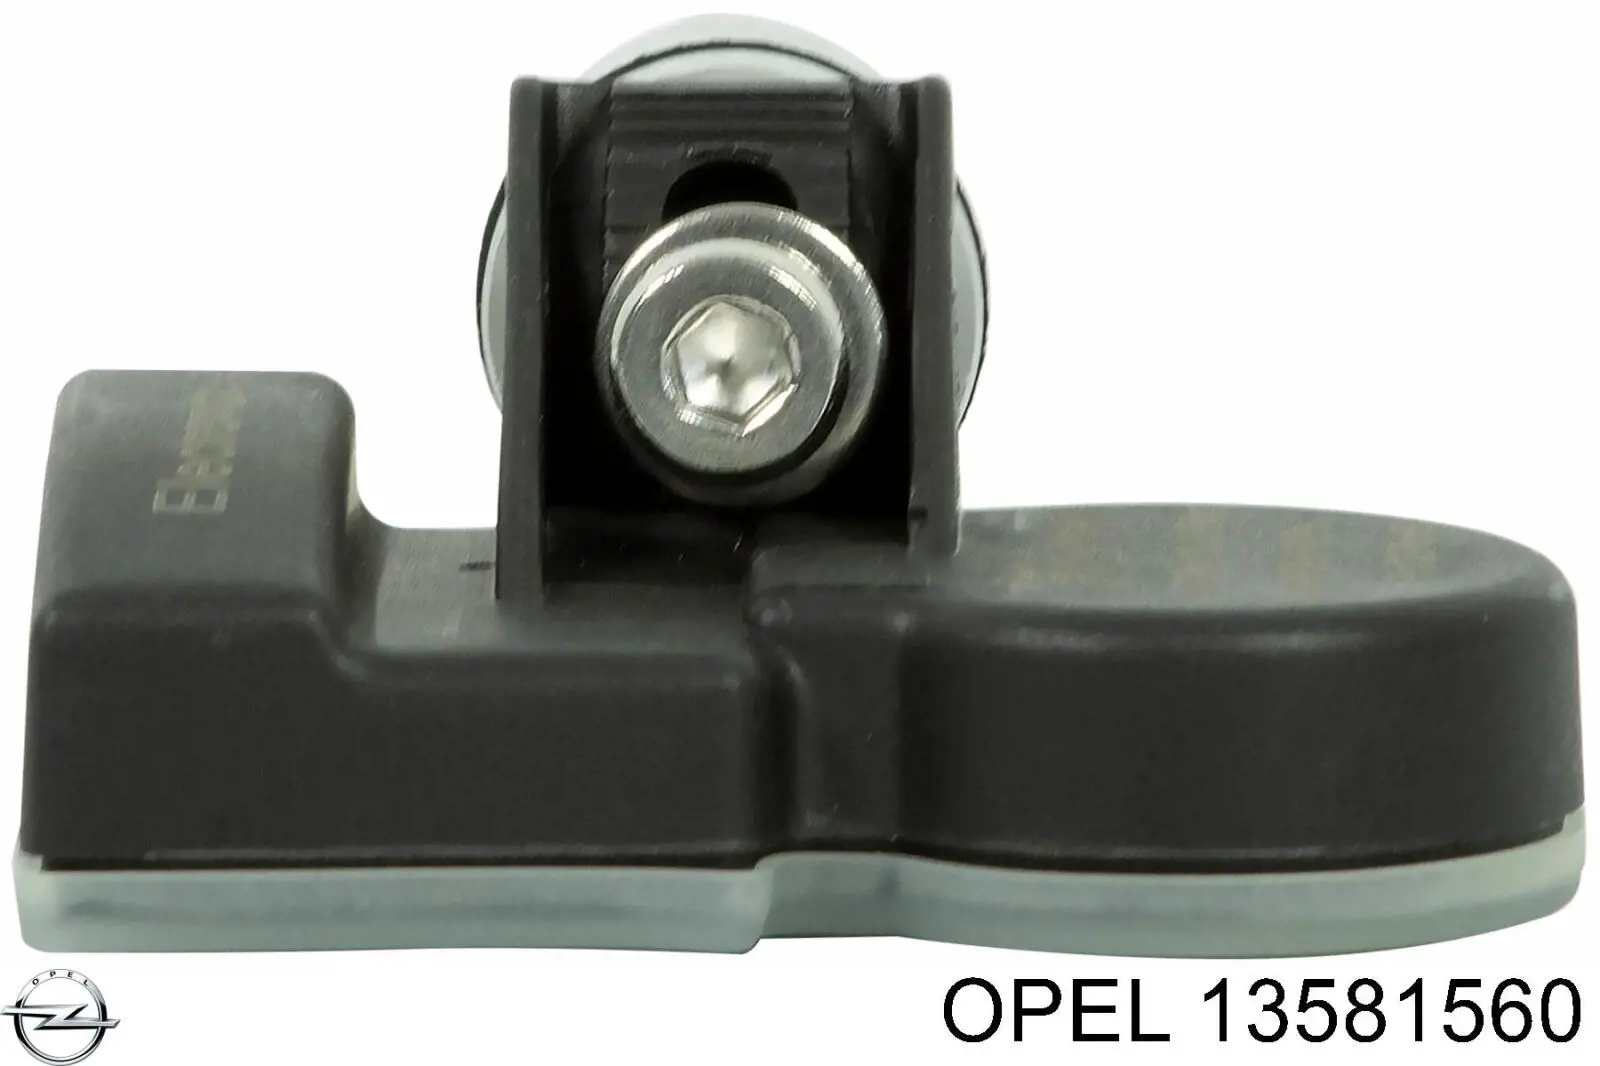 13581560 Opel sensor de presion de neumaticos